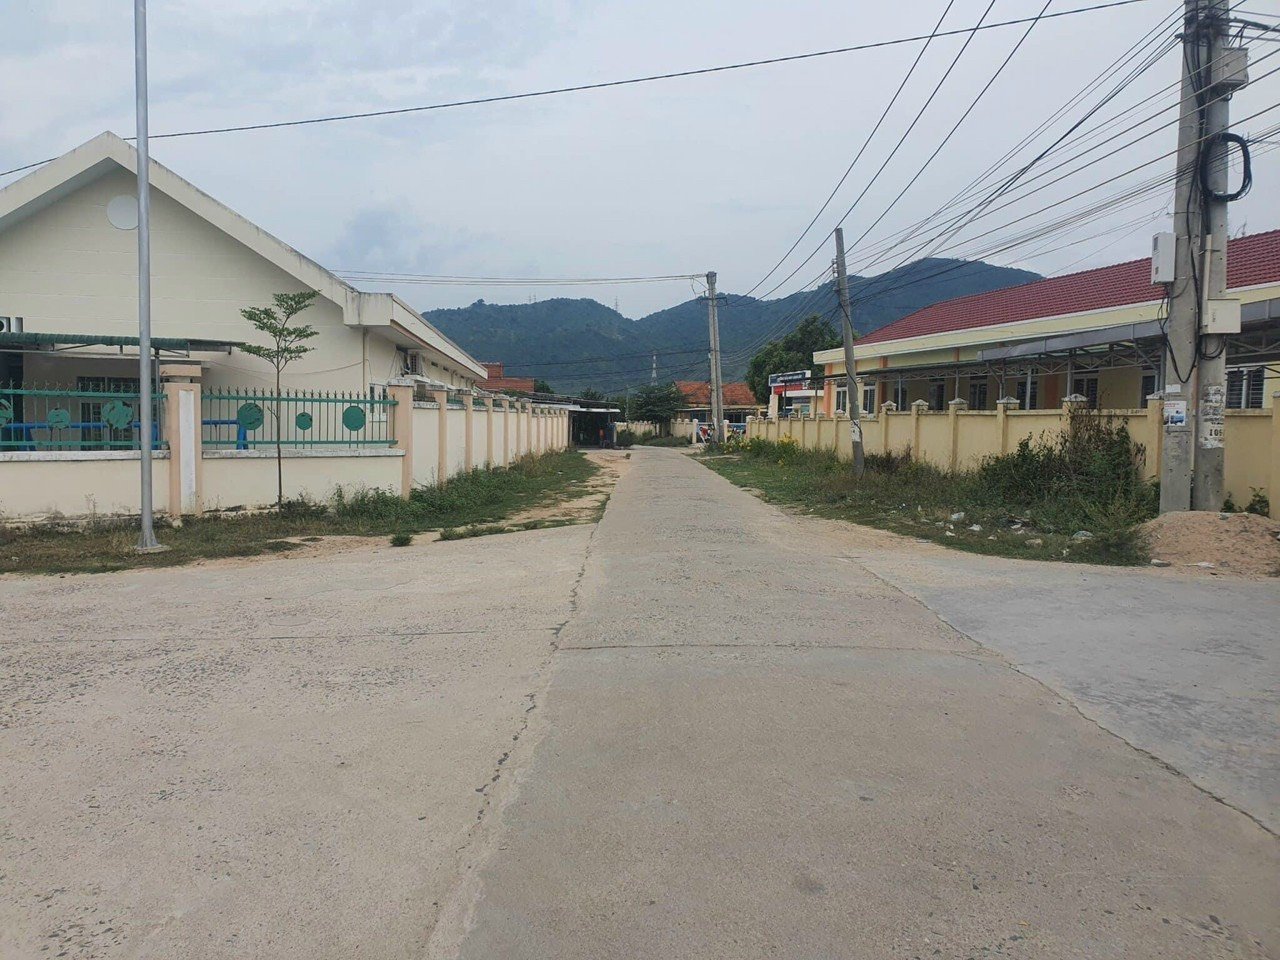 Bán lô đất gần UBND xã Ninh Lộc, trường tiểu học - Khu dân cư - Đường Qh 7m